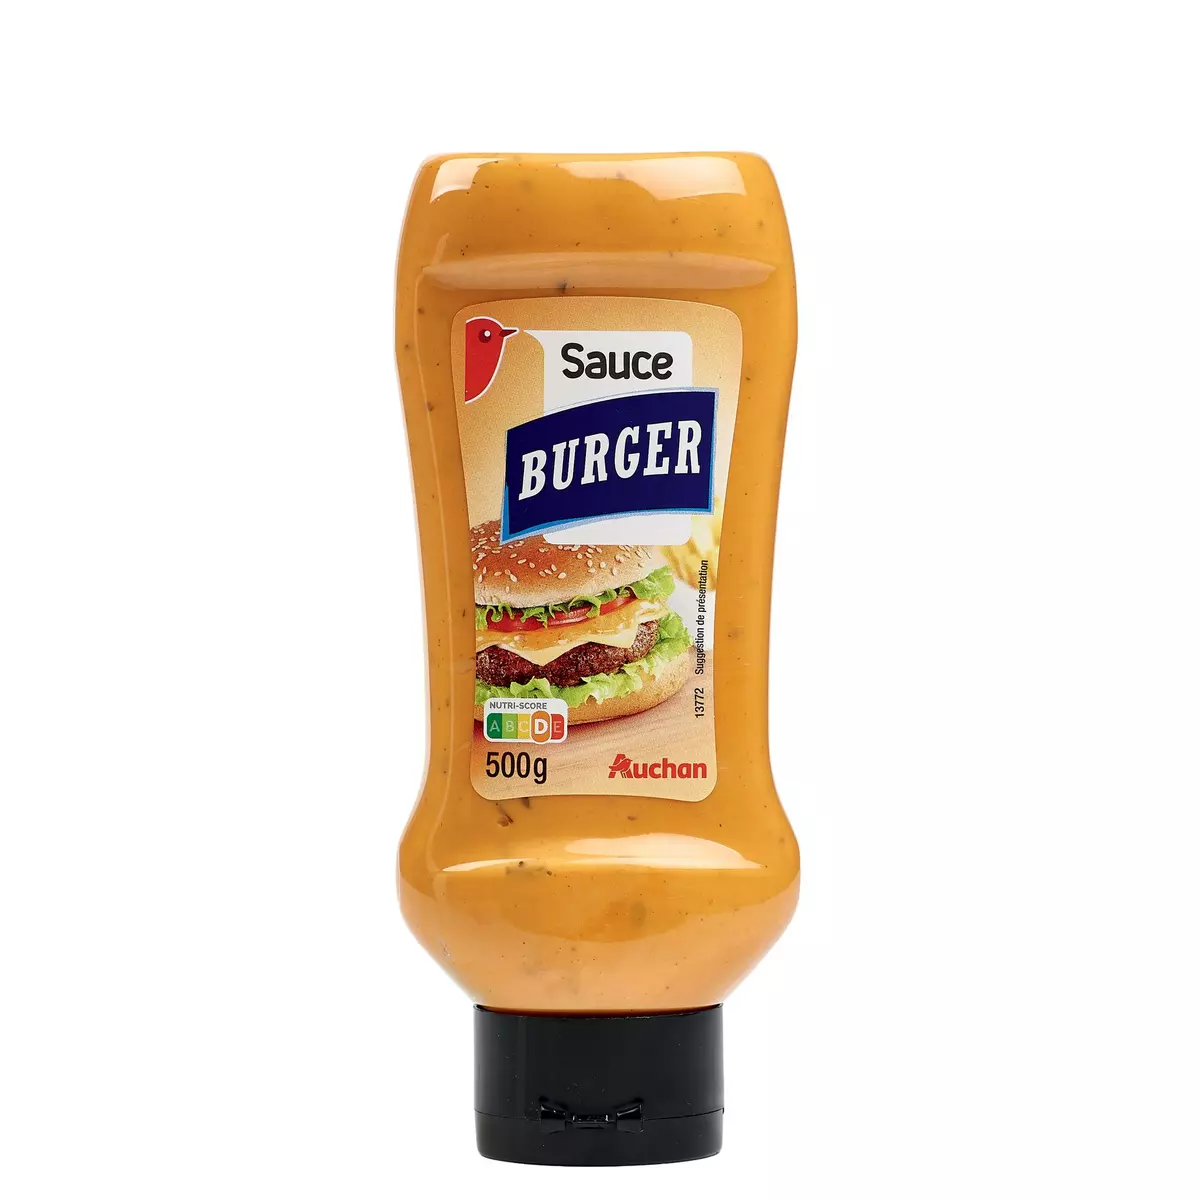 AUCHAN Sauce burger 500g